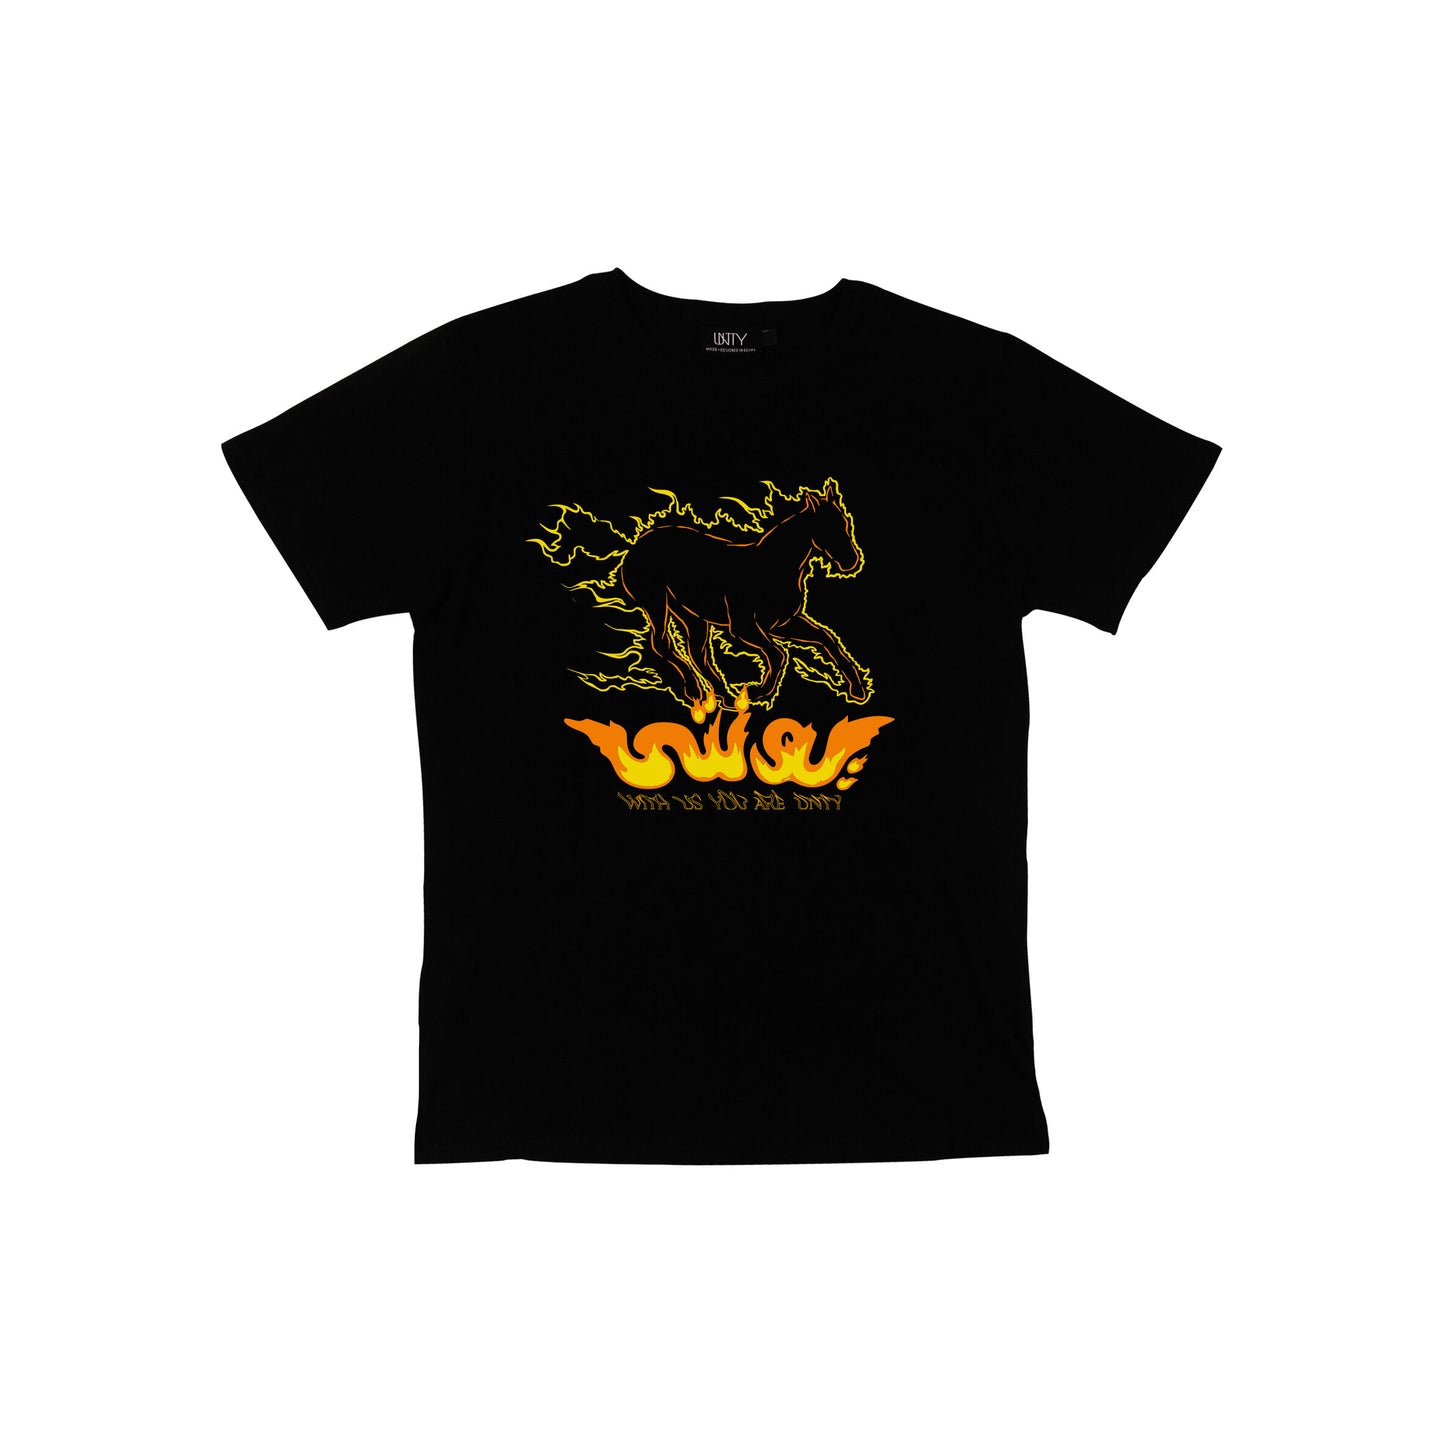 UNTY x Firehorse T shirt